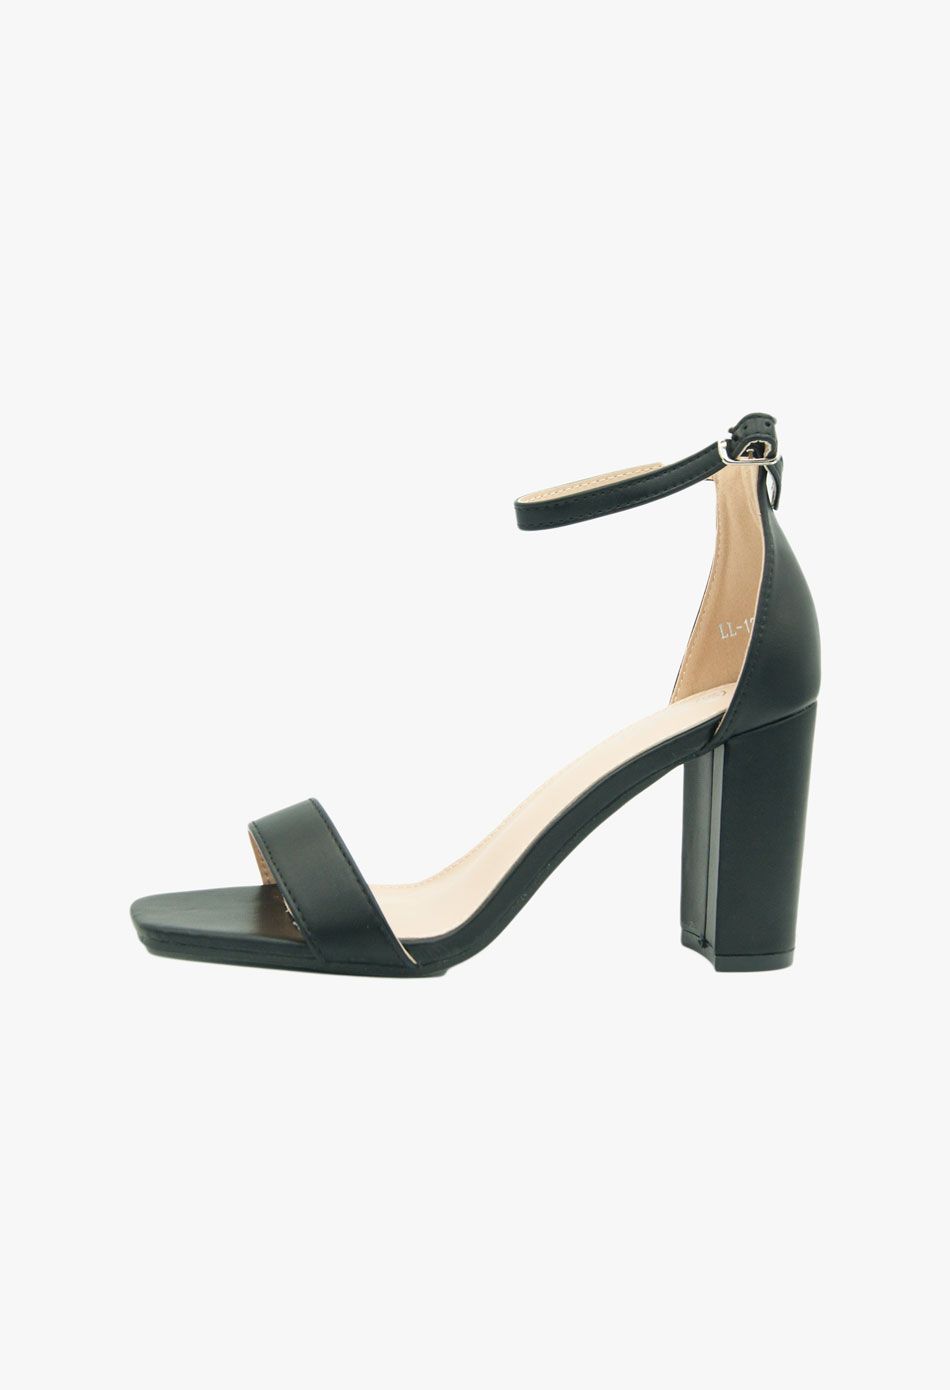 Πέδιλα με χοντρό τακούνι μαύρο / LT2236-black Ανοιχτά Παπούτσια joya.gr